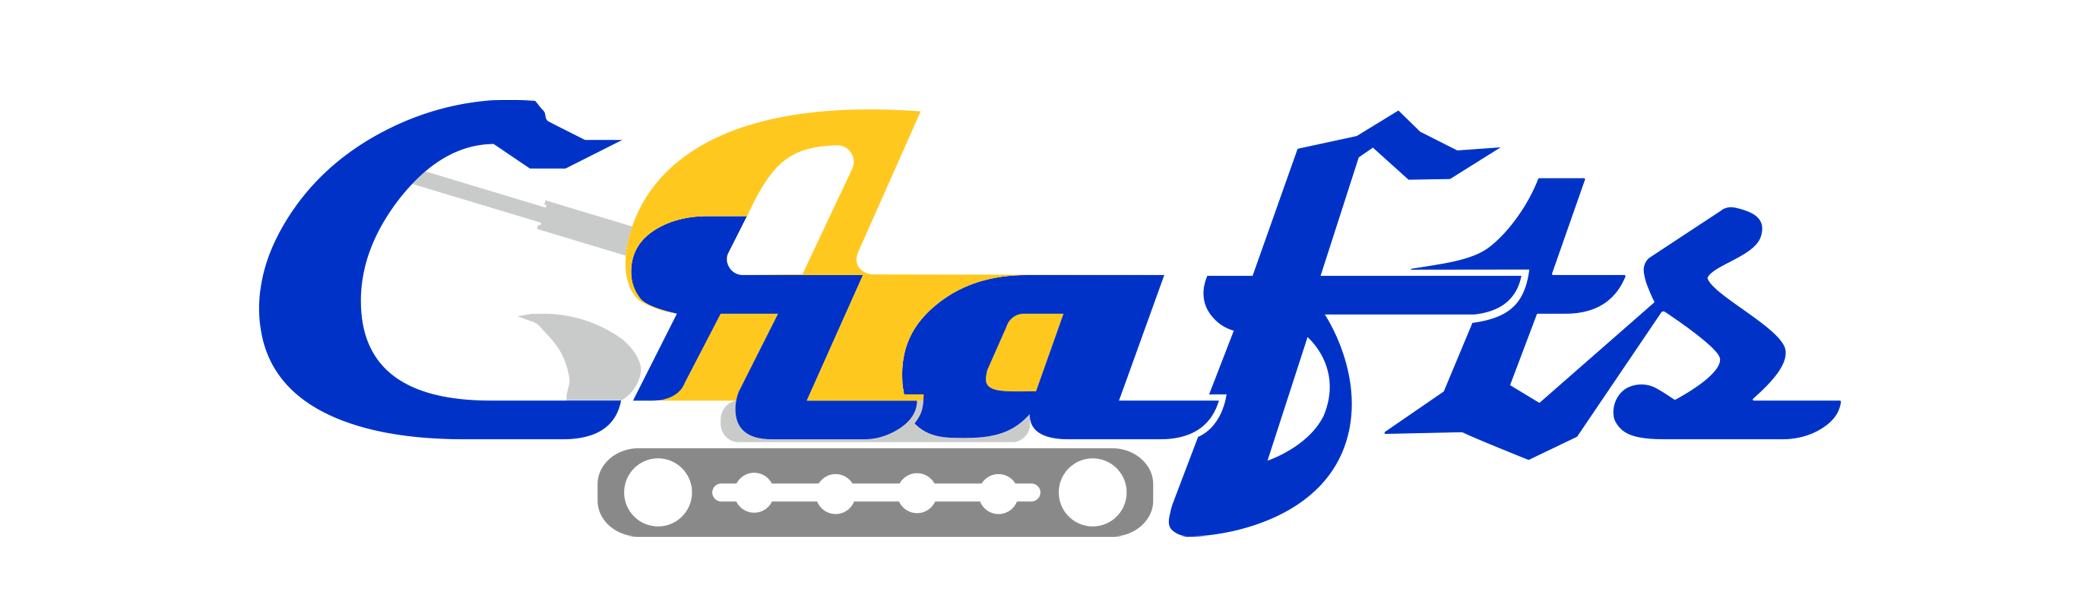 лого1